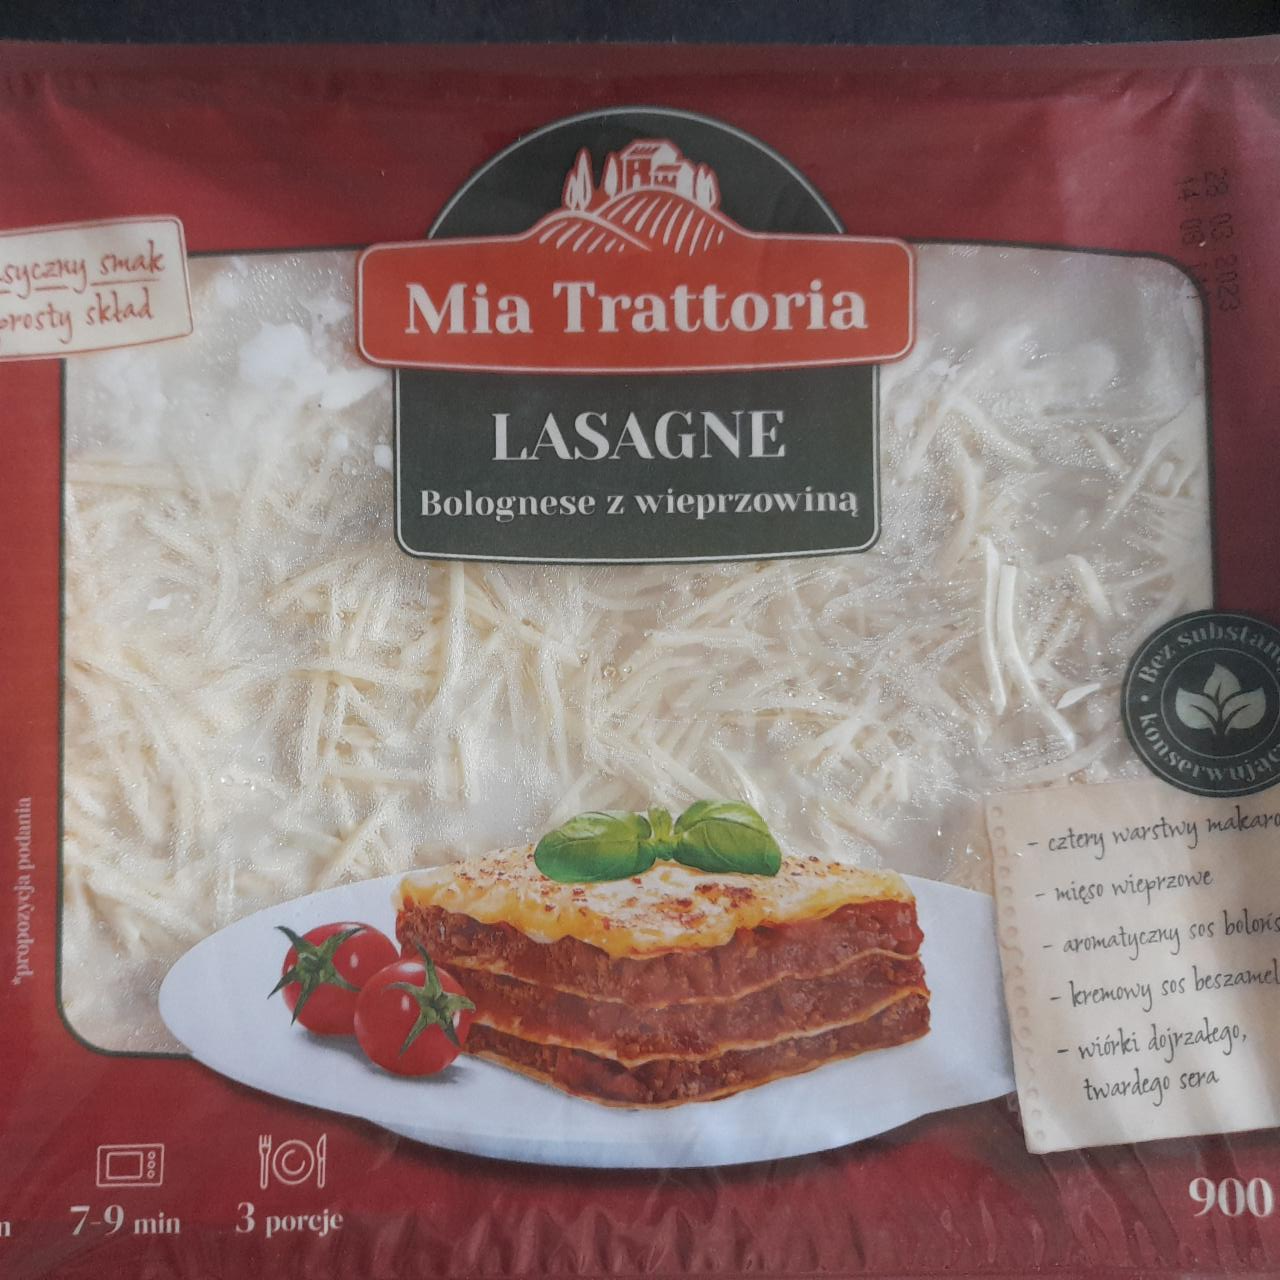 Zdjęcia - Lasagne bolognese z wieprzowiną Mia Trattoria